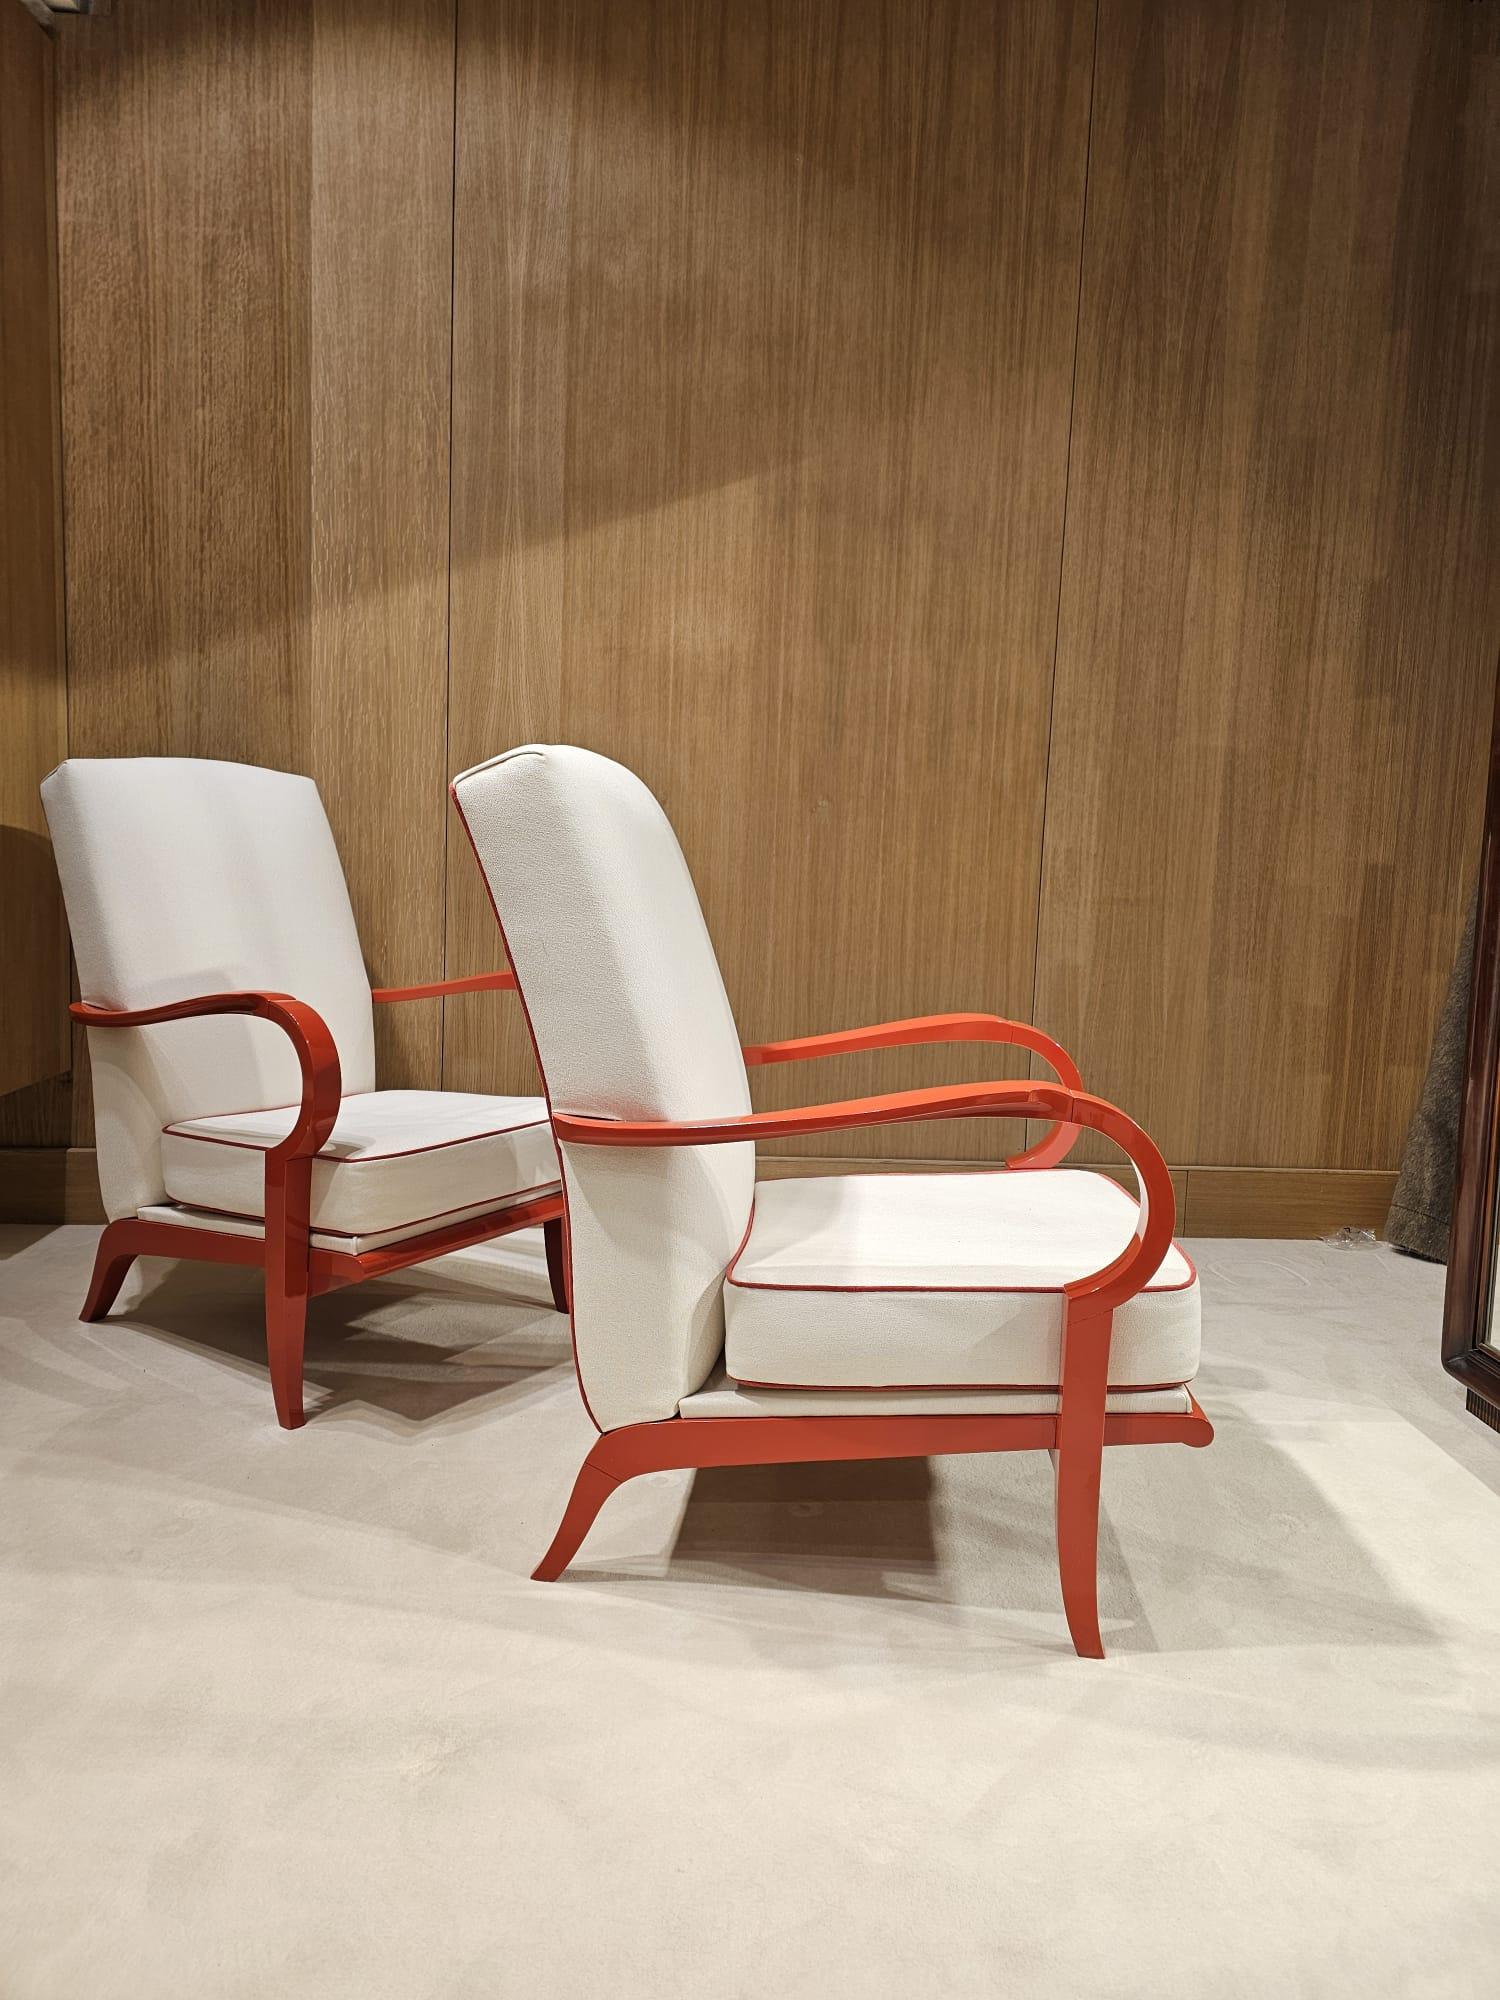 Lacquered très belle paire de fauteuils laquée rouge orangée